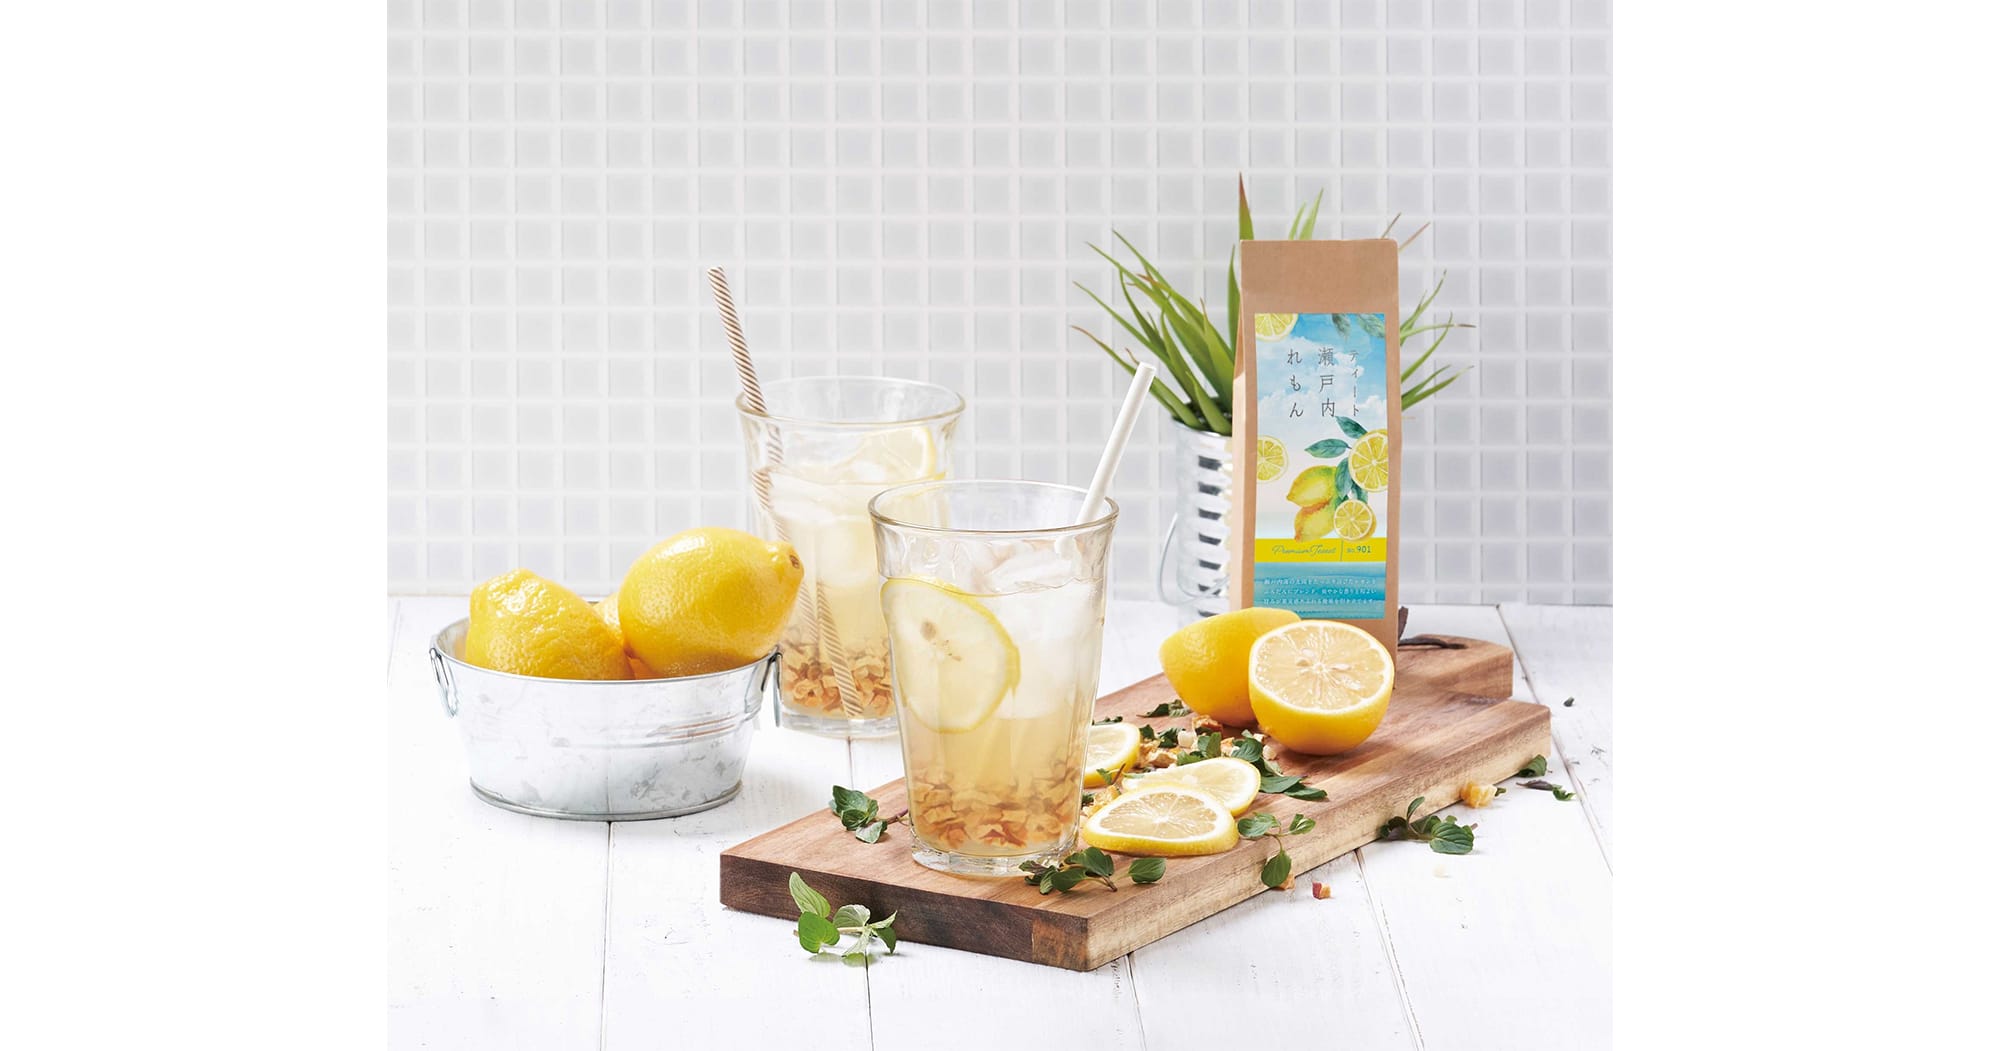 生産農家から規格外のレモンを直接買い取ってドライ加工した「ティート瀬戸内レモン」。